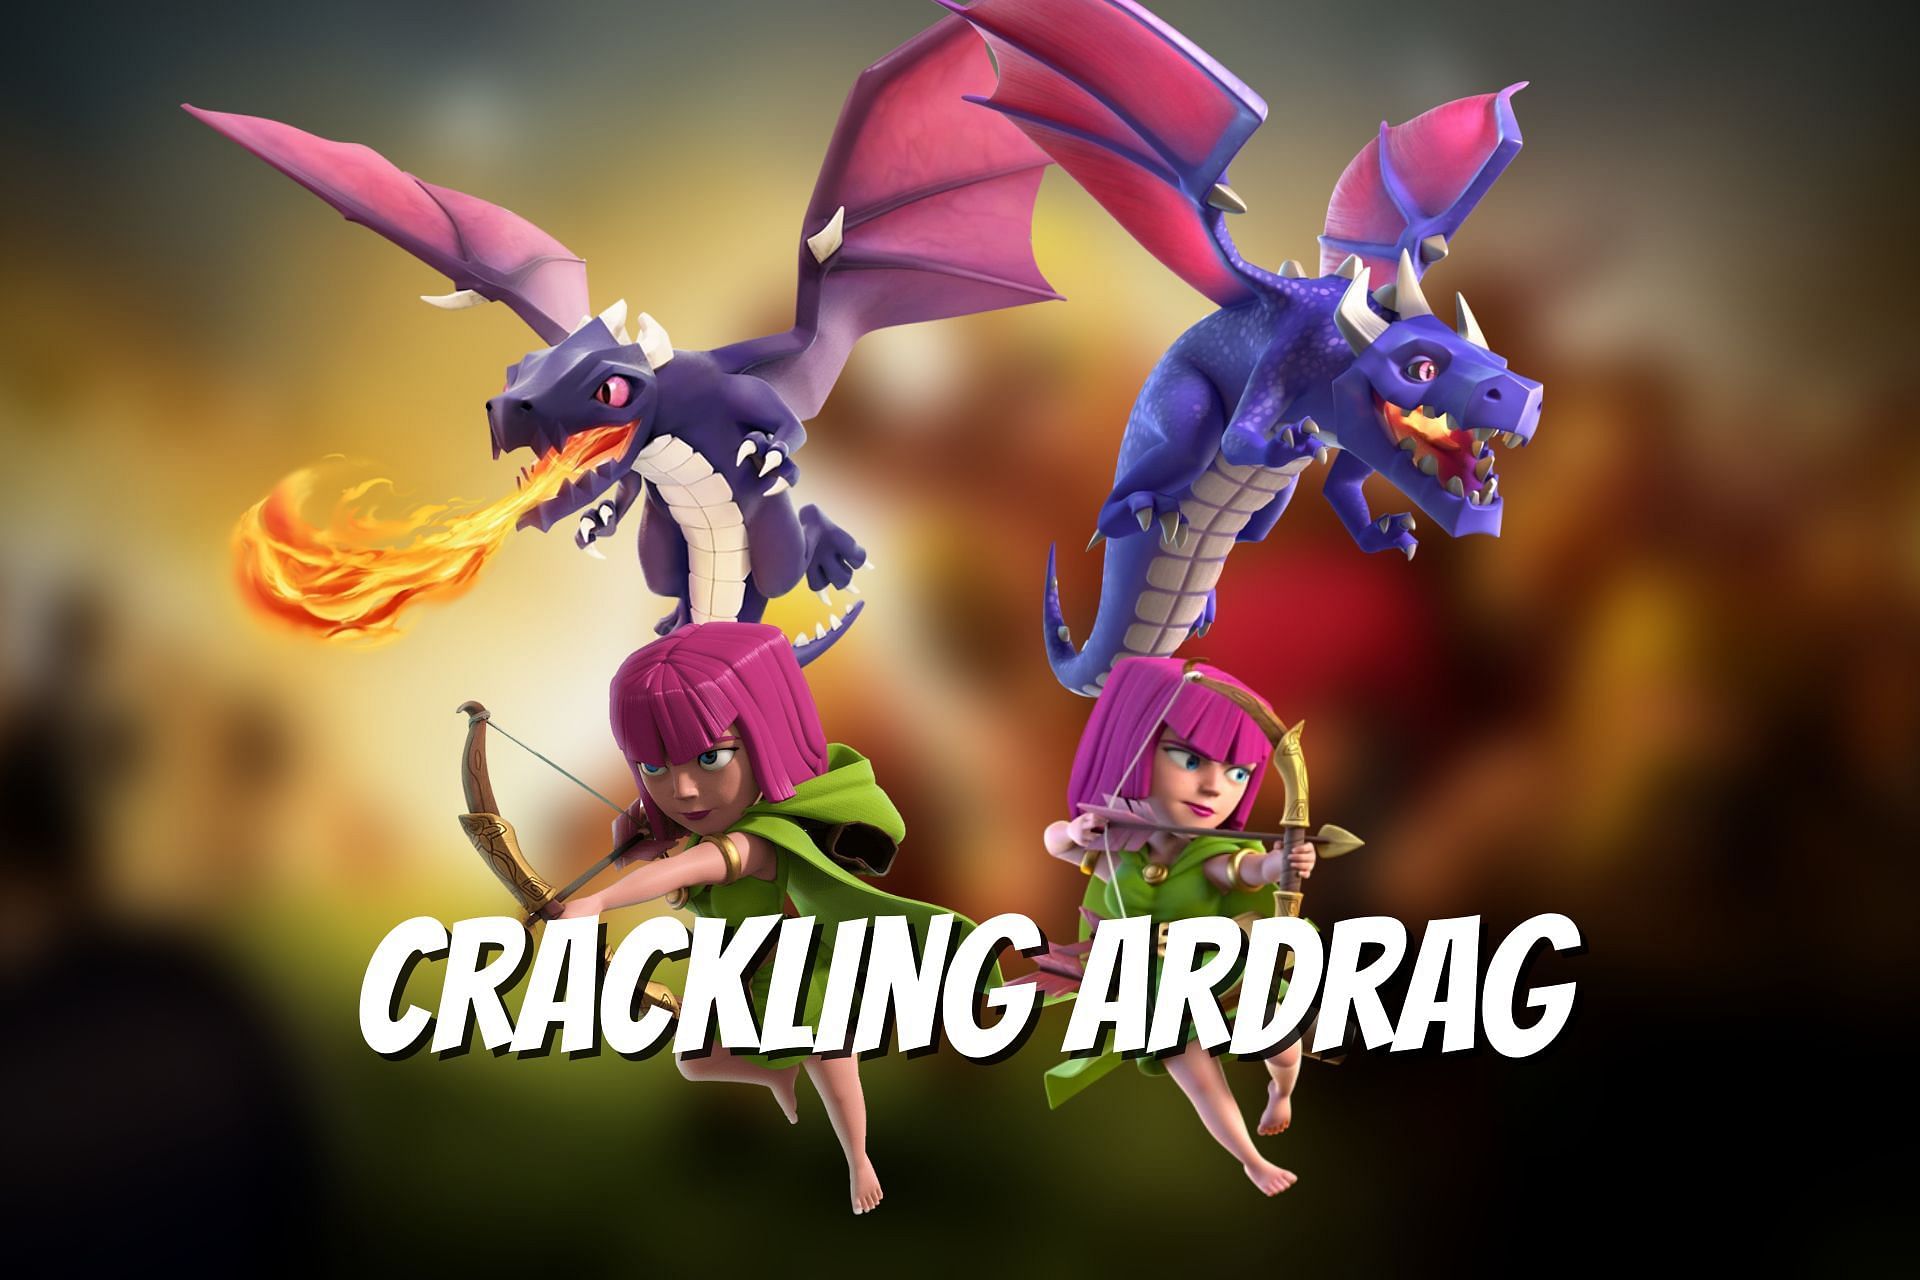 Crackling ArDrag attack strategy in Clash of Clans (Image via Sportskeeda)